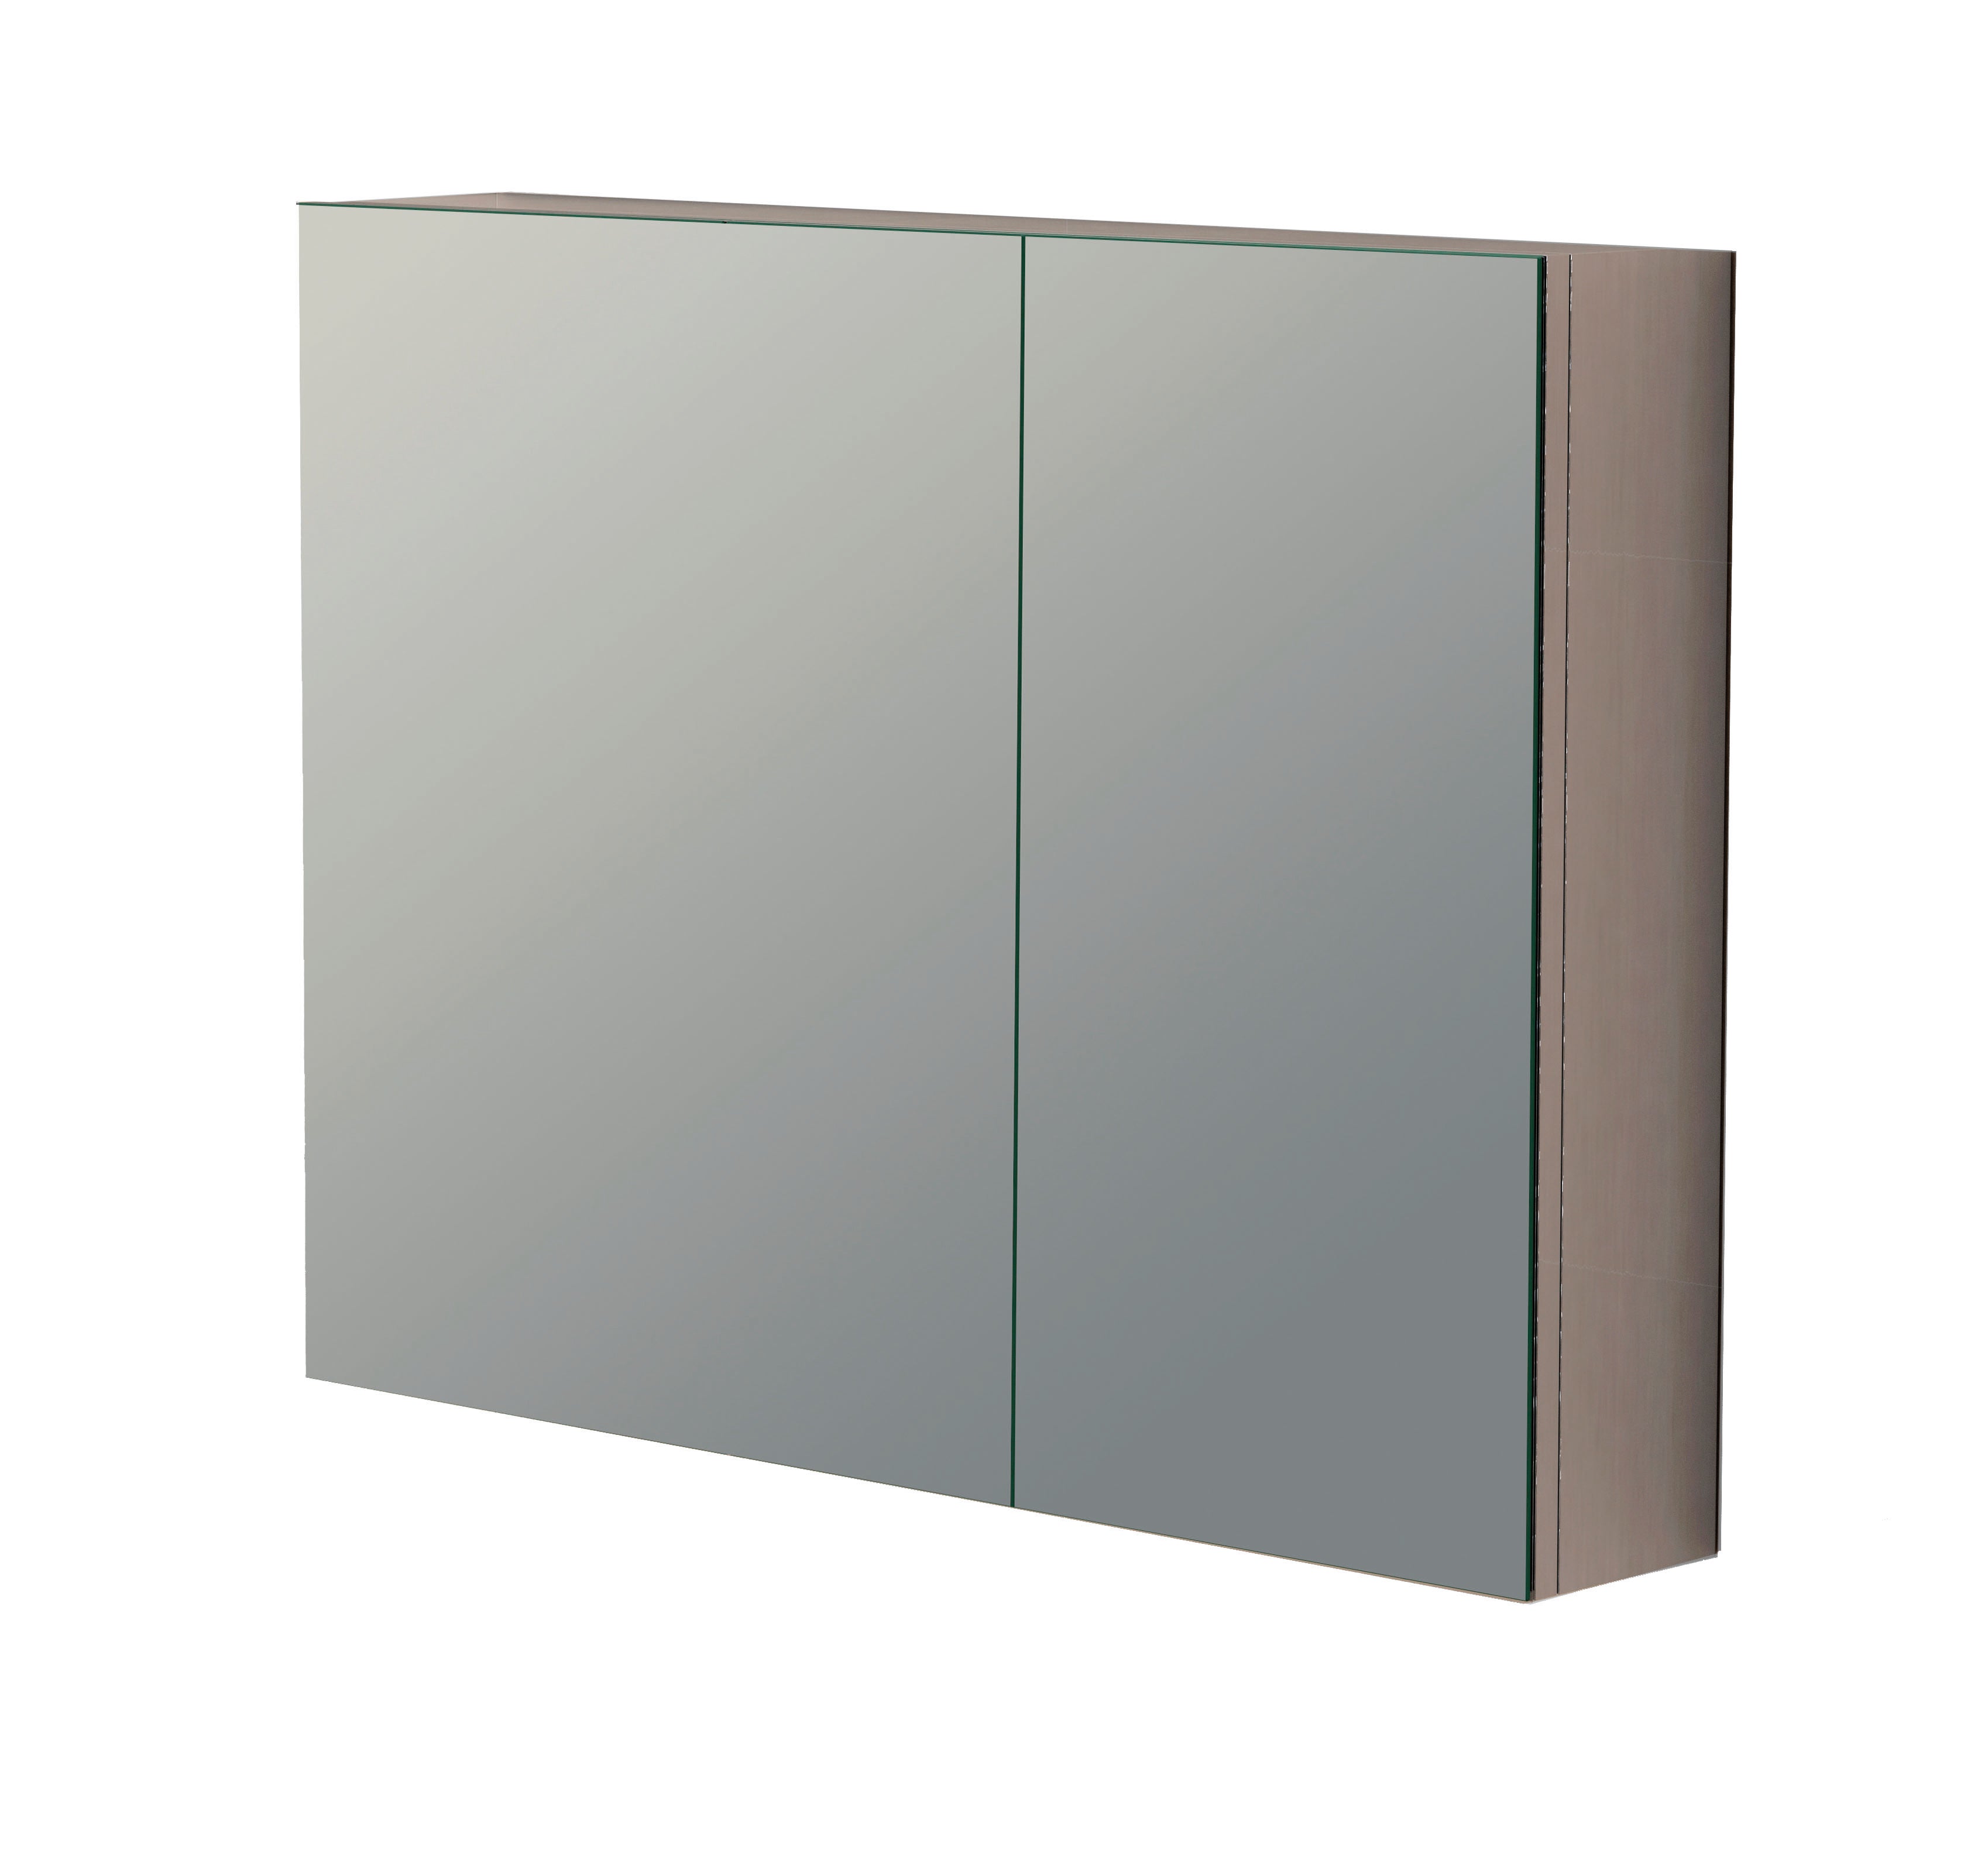 DAX Sea Mirror Cabinet 32 Inches Wide (DAX-120-SEA0232)